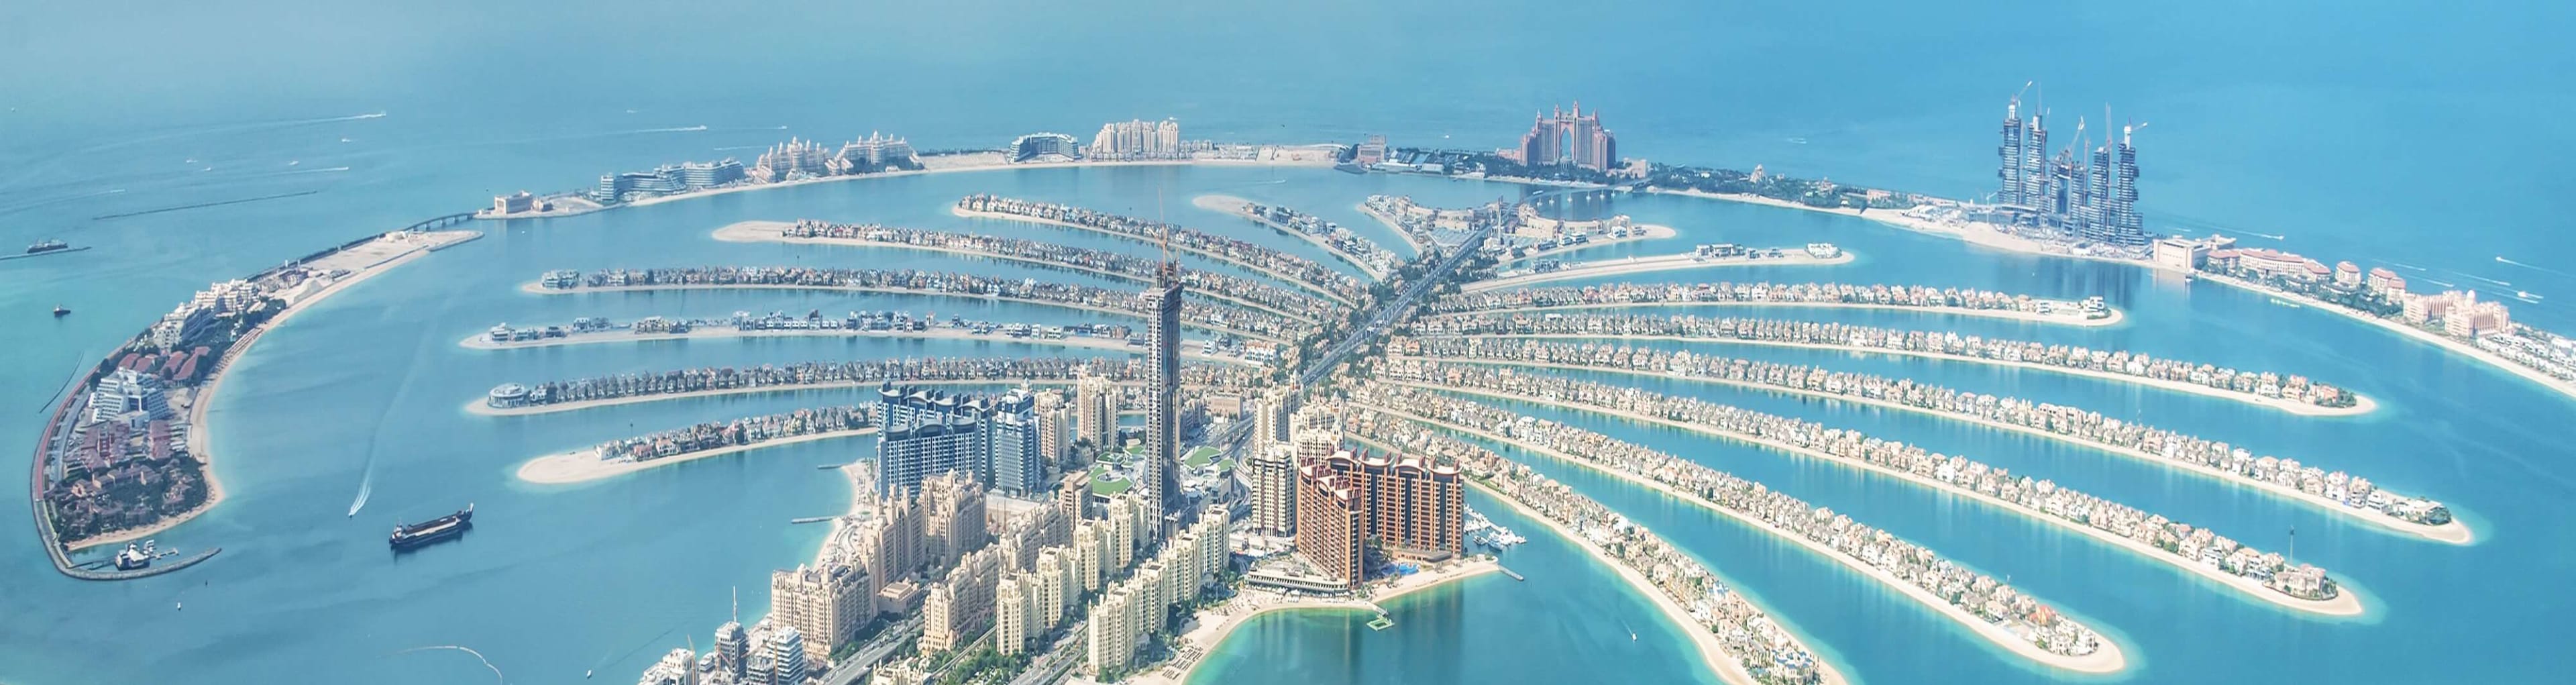 Aerial shot of the Palm Jumeirah Dubai